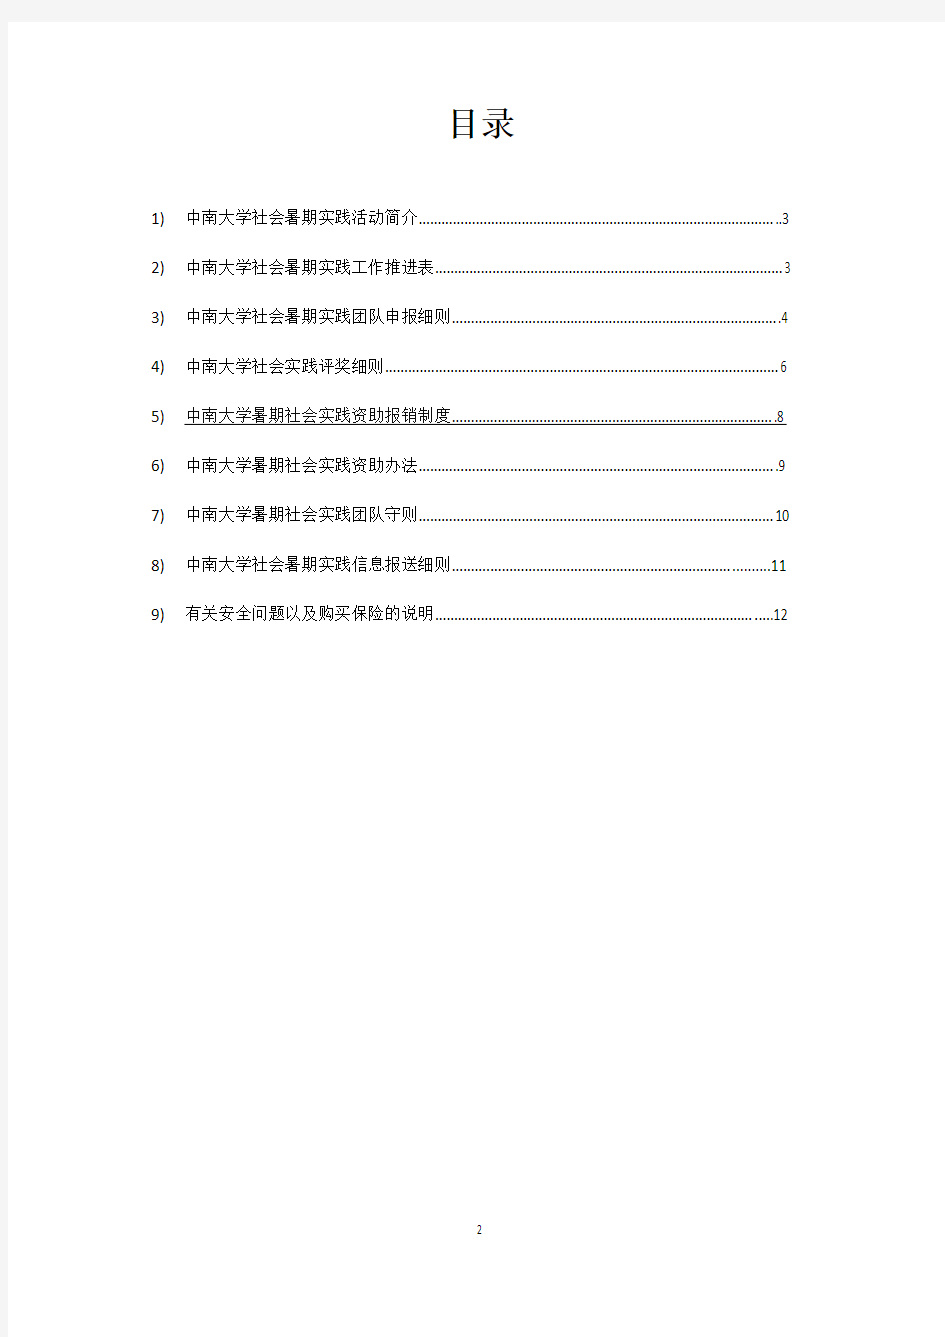 中南大学暑期社会实践指导手册